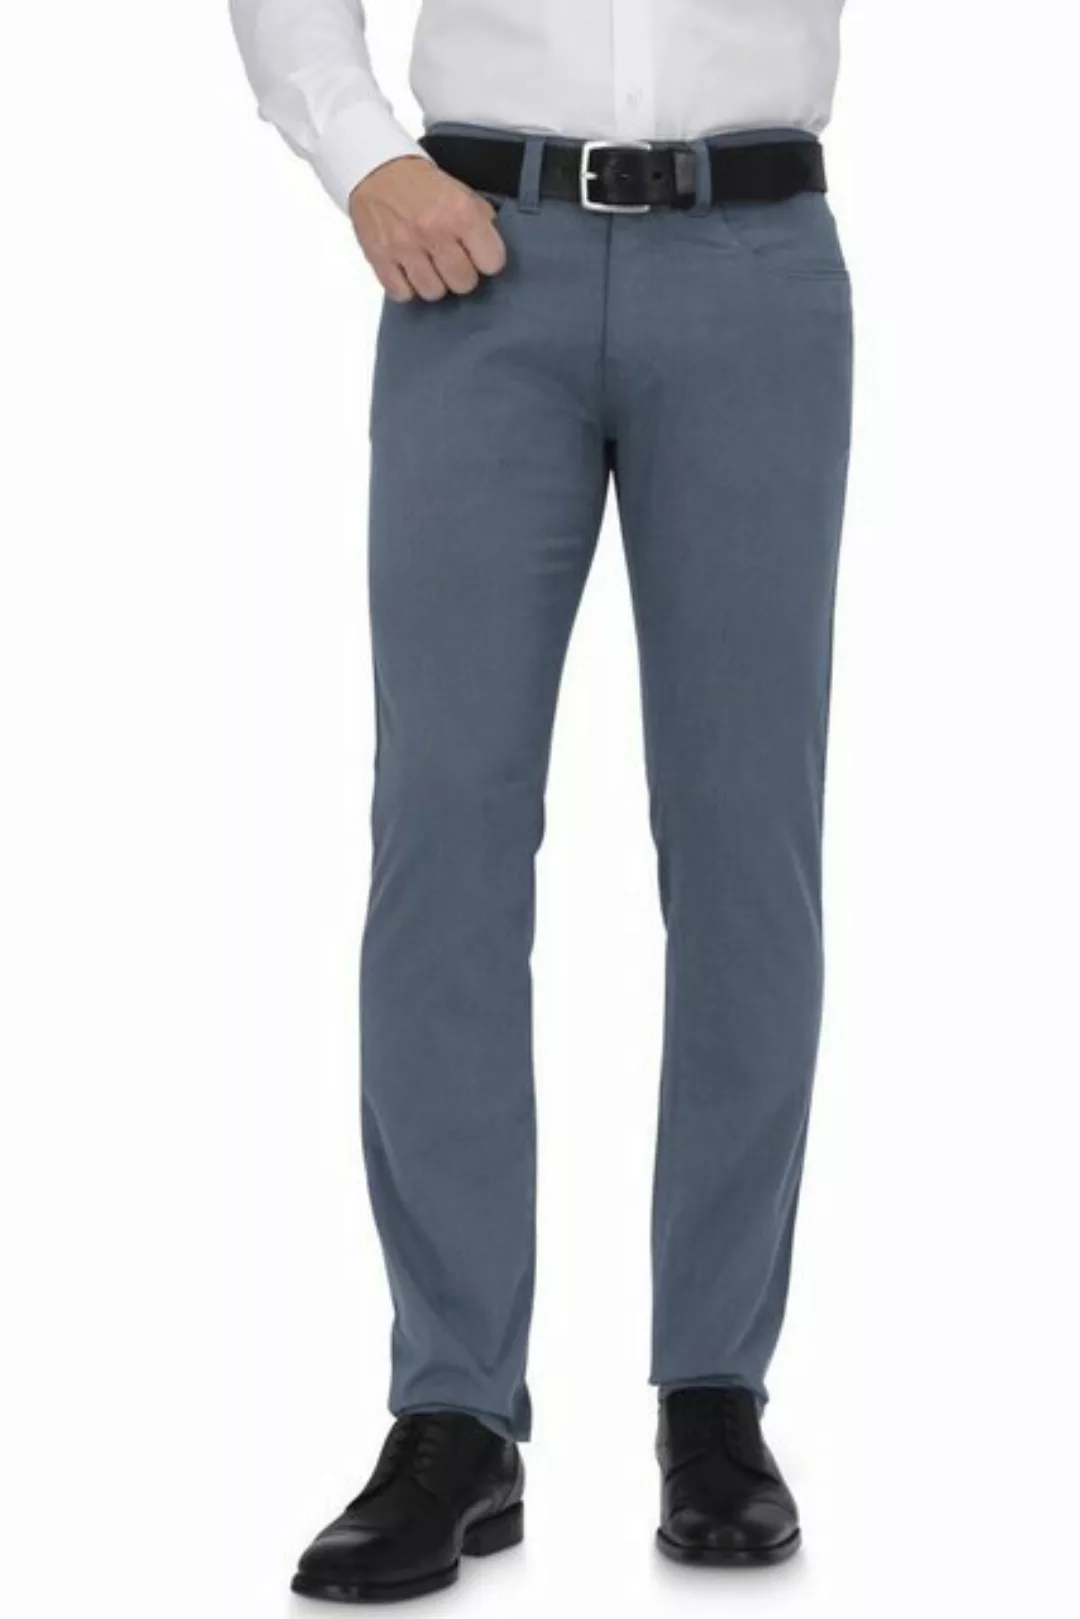 Pierre Cardin Trousers Lyon Tapered Ocean Blau - Größe W 32 - L 32 günstig online kaufen